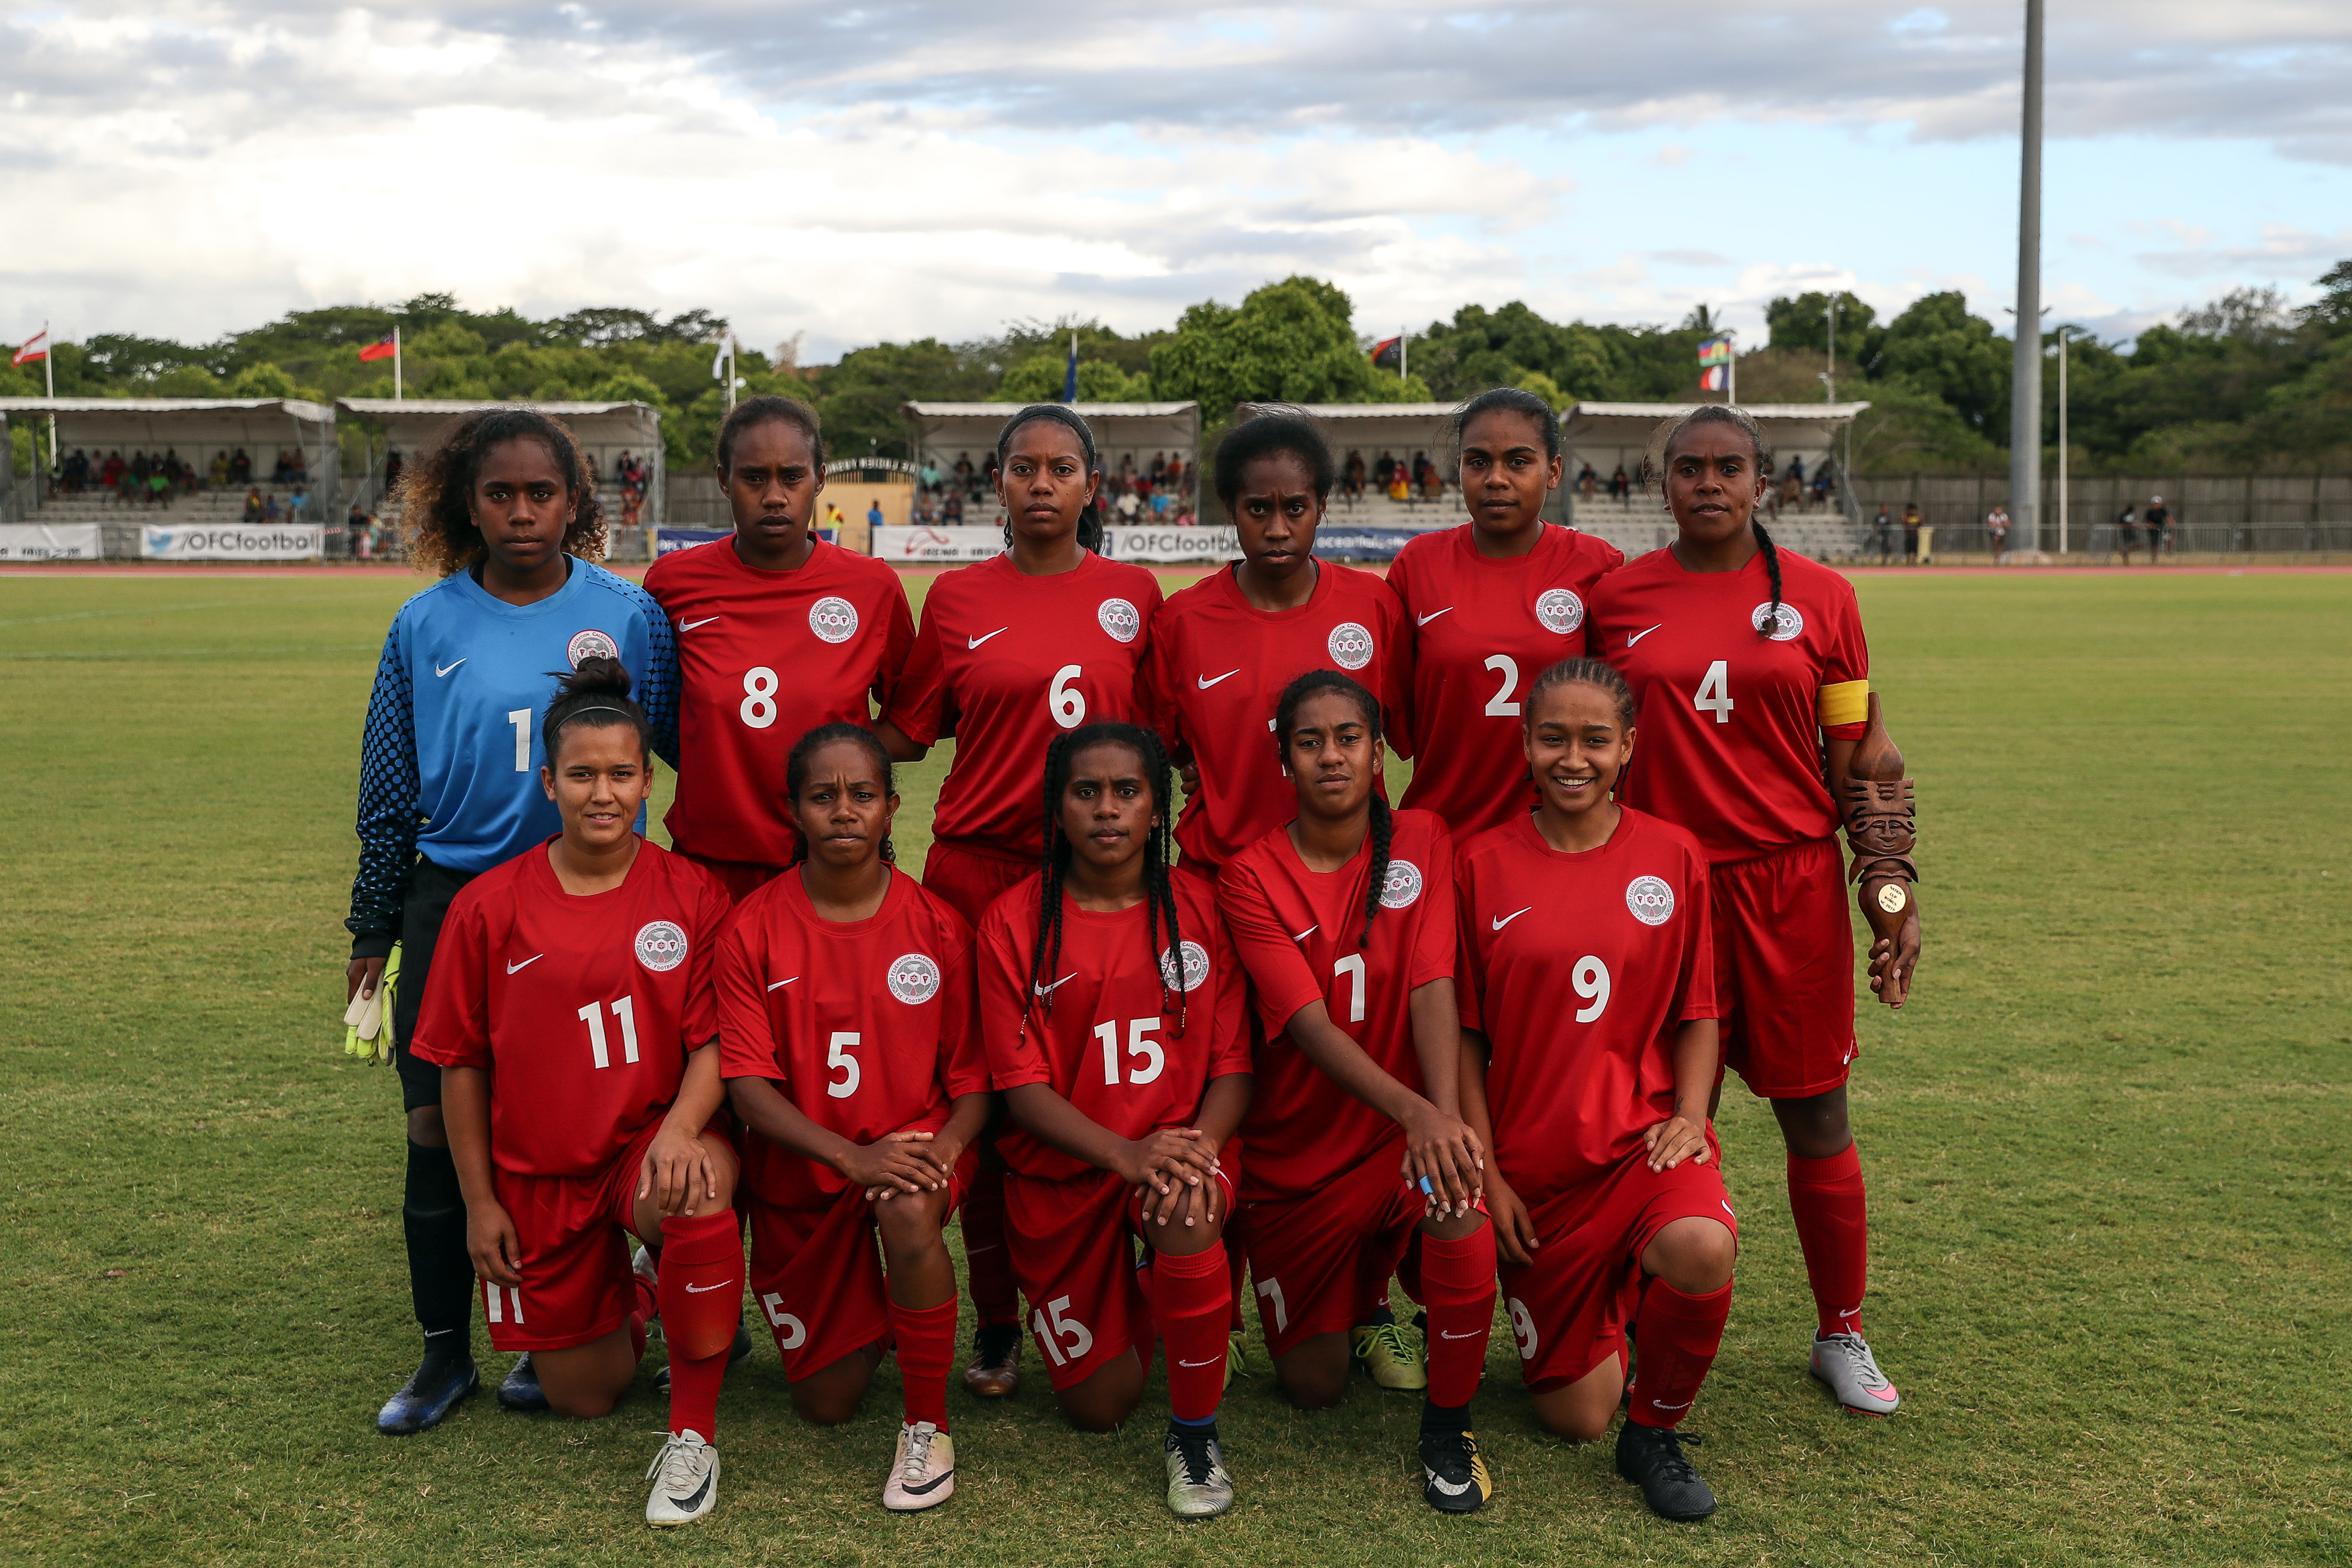 L'équipe de Calédonie participera en juillet aux Qualifications Coupe du Monde, zone Océanie. Ce sera à SUVA, aux Fidji.